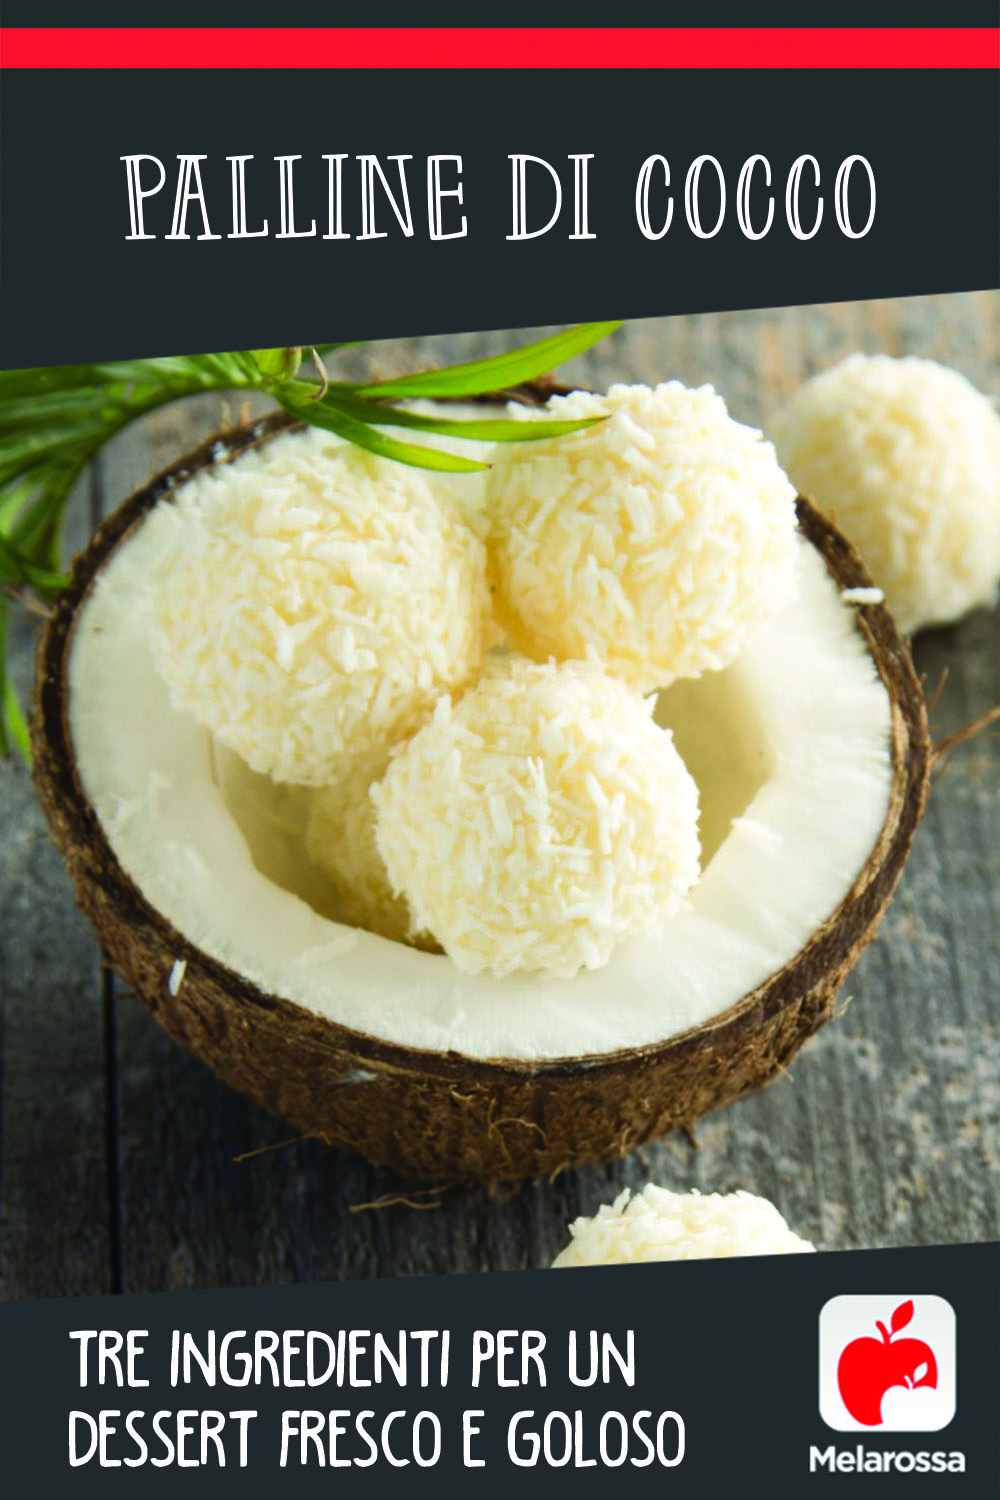 palline di cocco: tre ingredienti per un dessert fresco e goloso